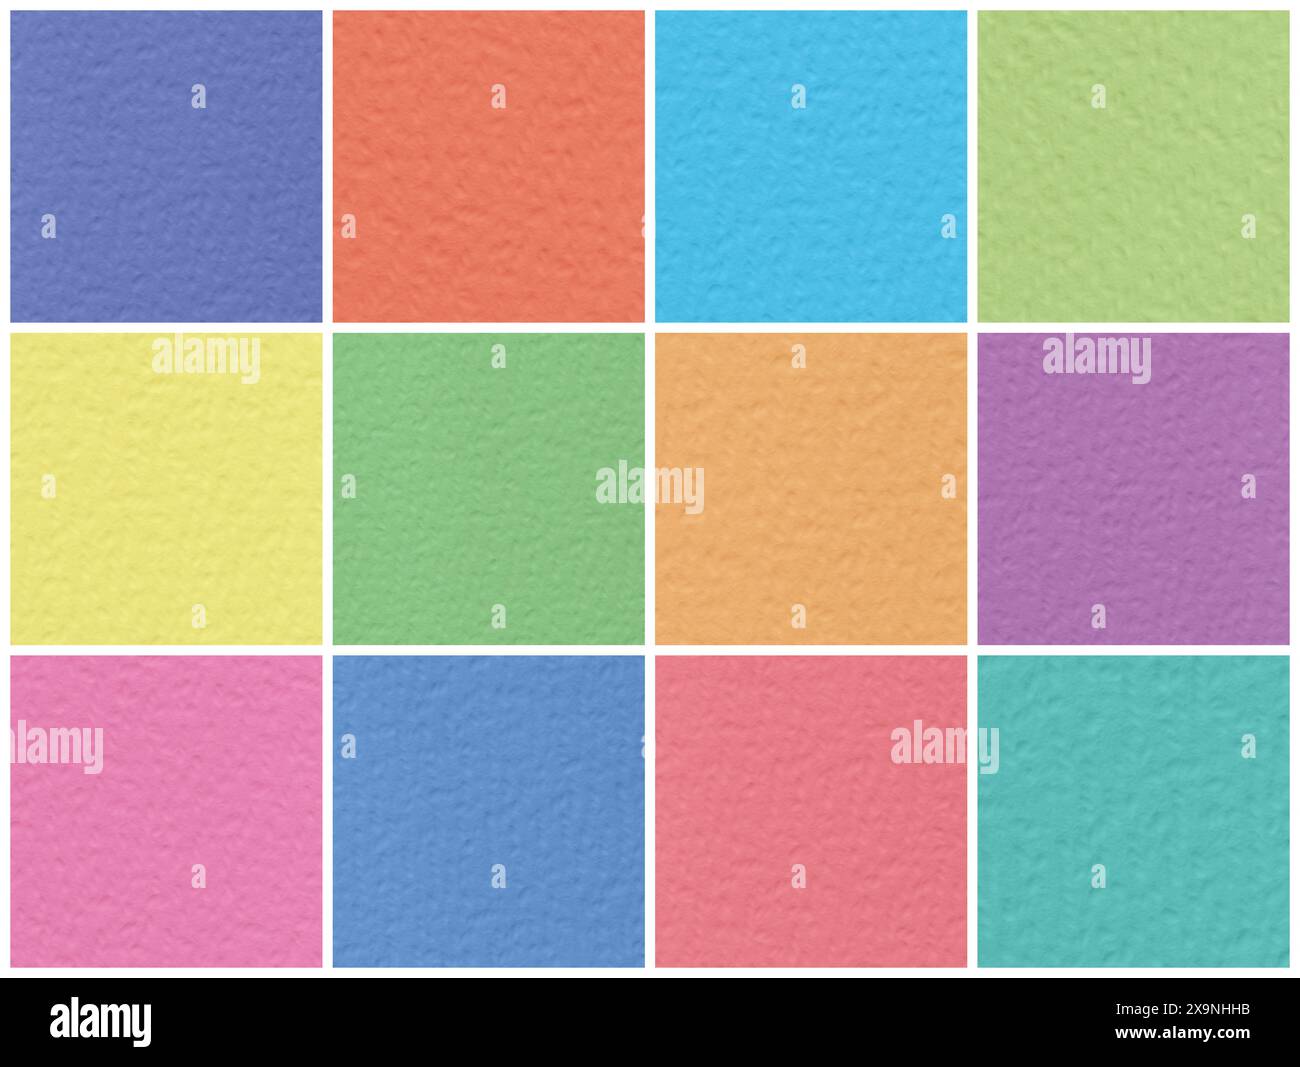 fond de couleur abstrait : photos carrées de texture de papier coloré Banque D'Images